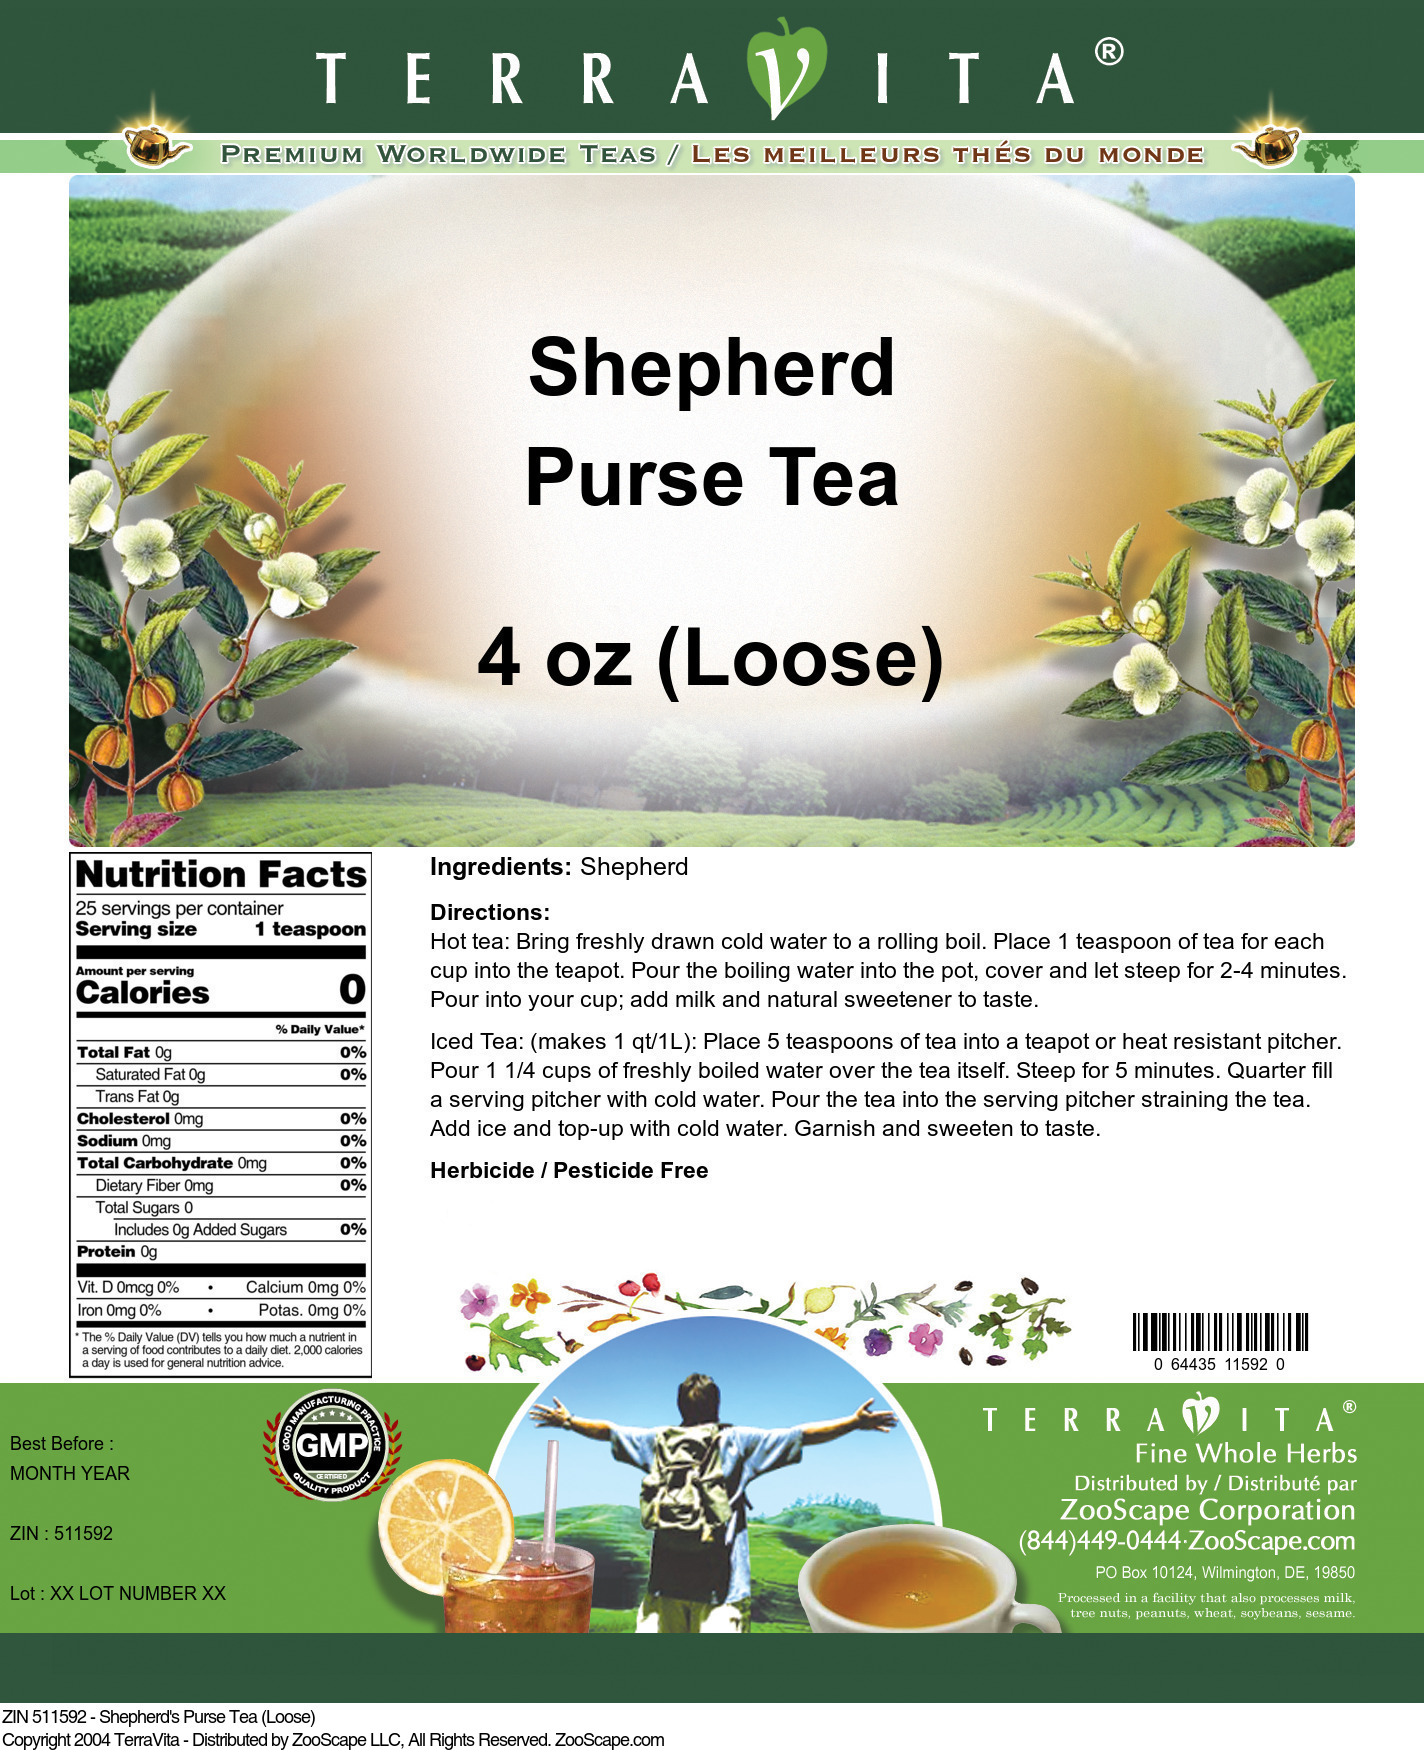 Shepherd's Purse Tea (Loose) - Label